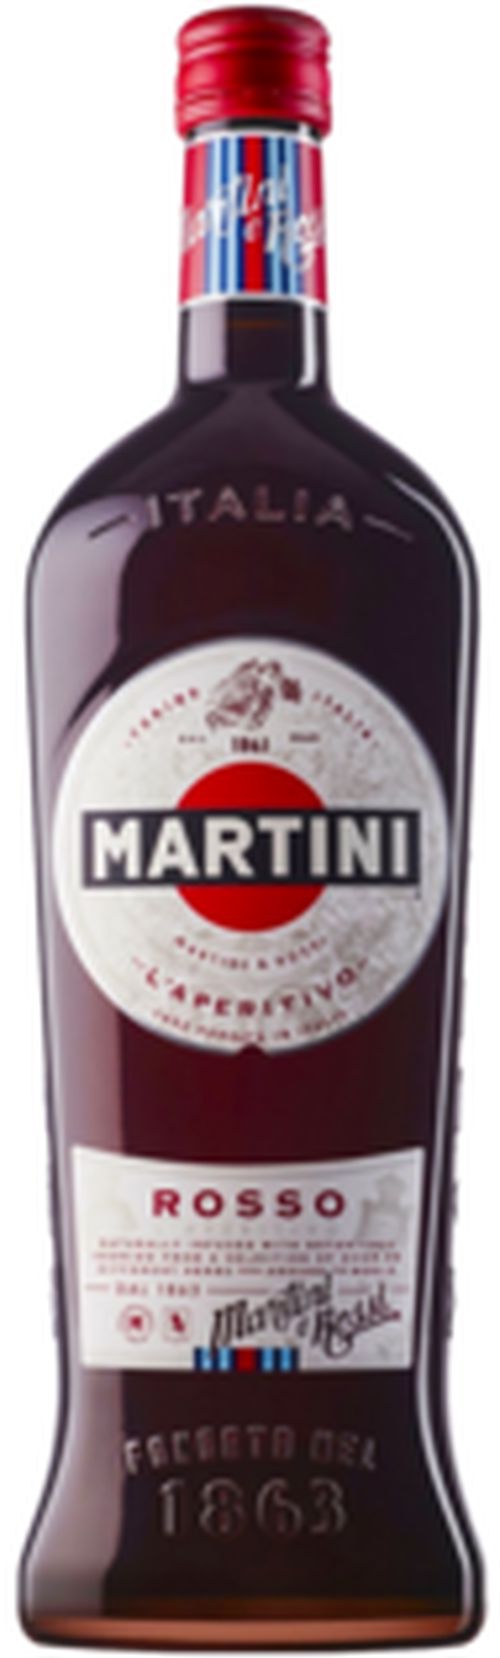 Martini Rosso 14.4% 0.75L